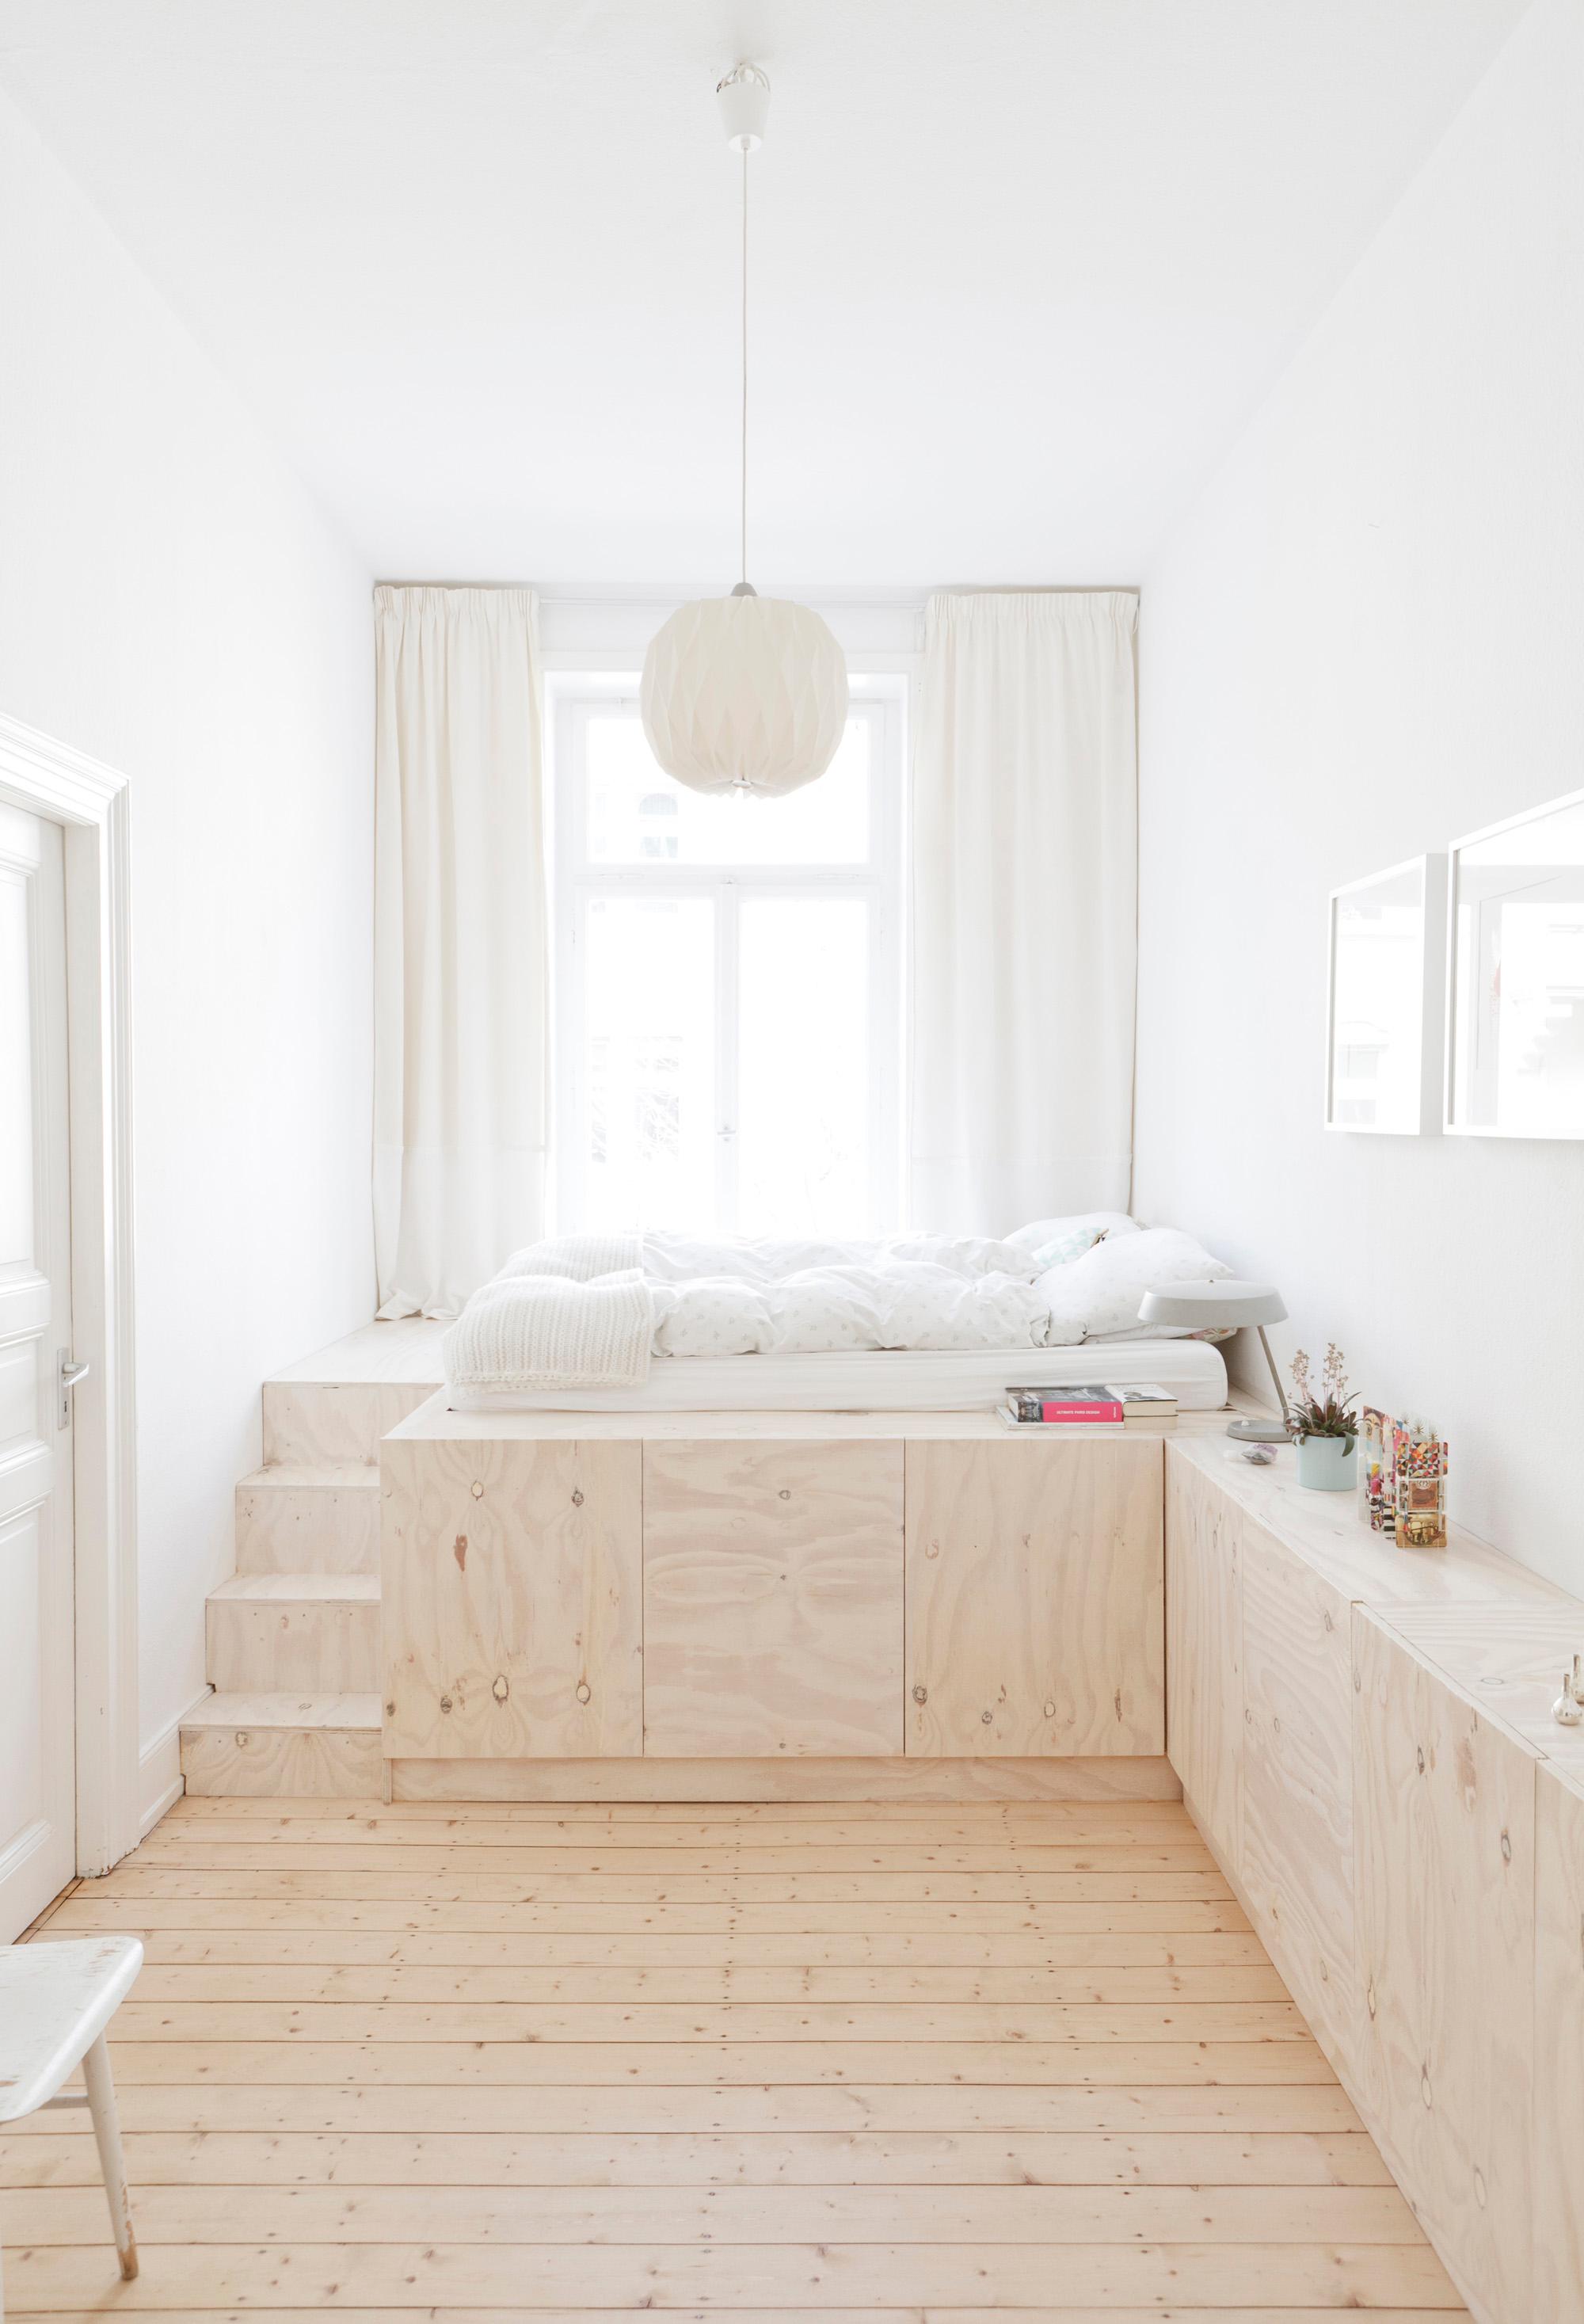 Schlafzimmer mit Sideboard-Bettpodest-Kombination #bett #sideboard #pendelleuchte #podest #hochbett #schlafzimmergestalten ©STUDIO OINK